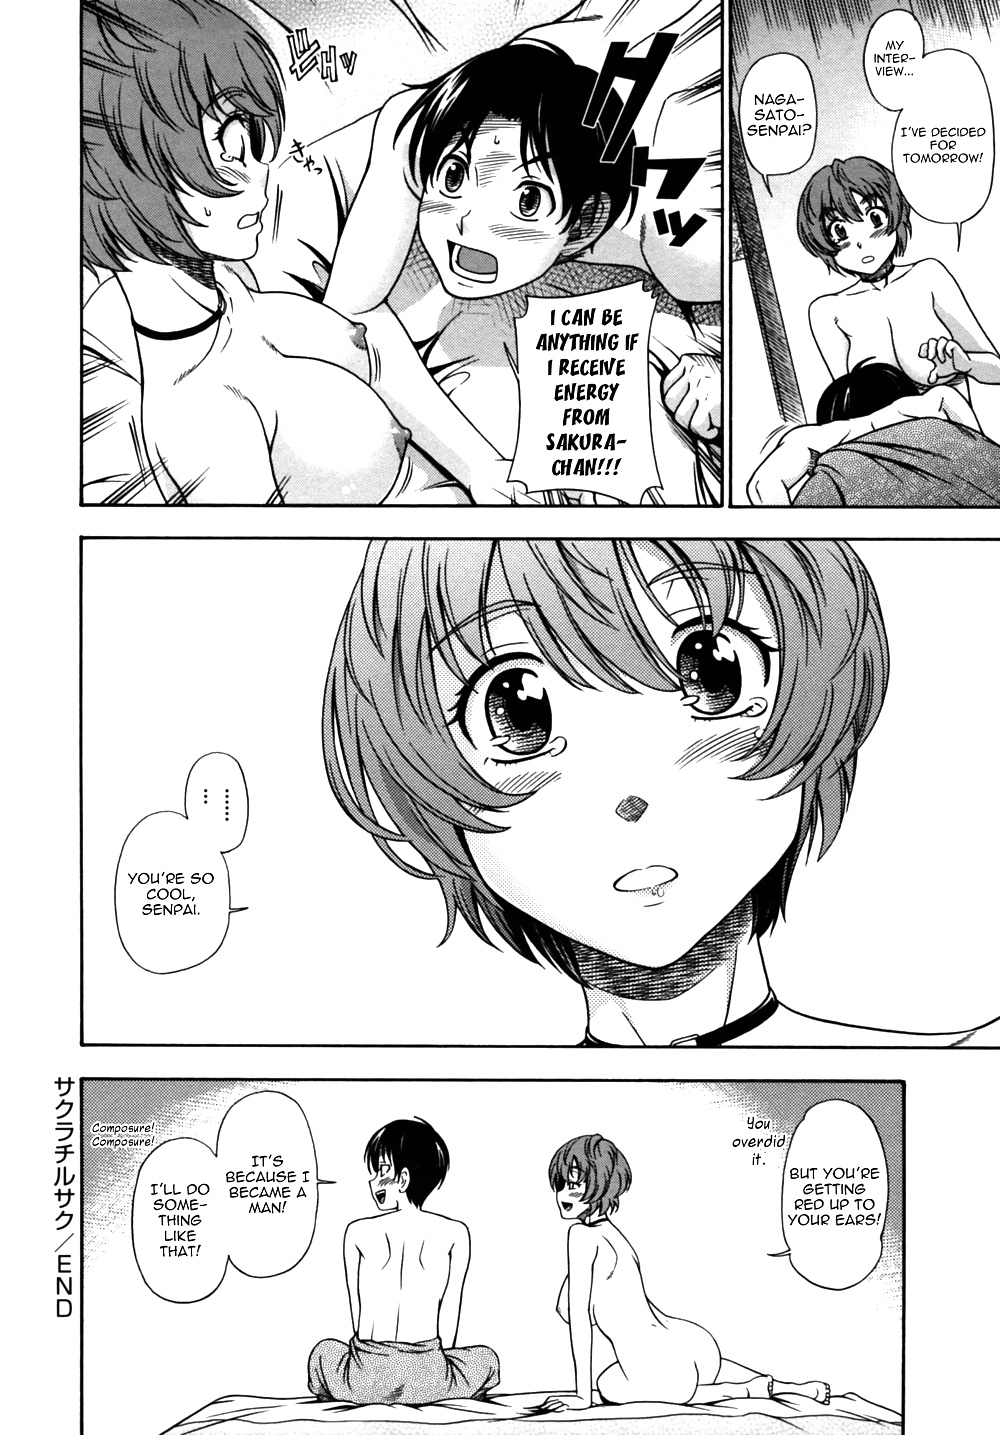 (HENTAI Comic) Fukudada Erotic WORKS #4 #32228553